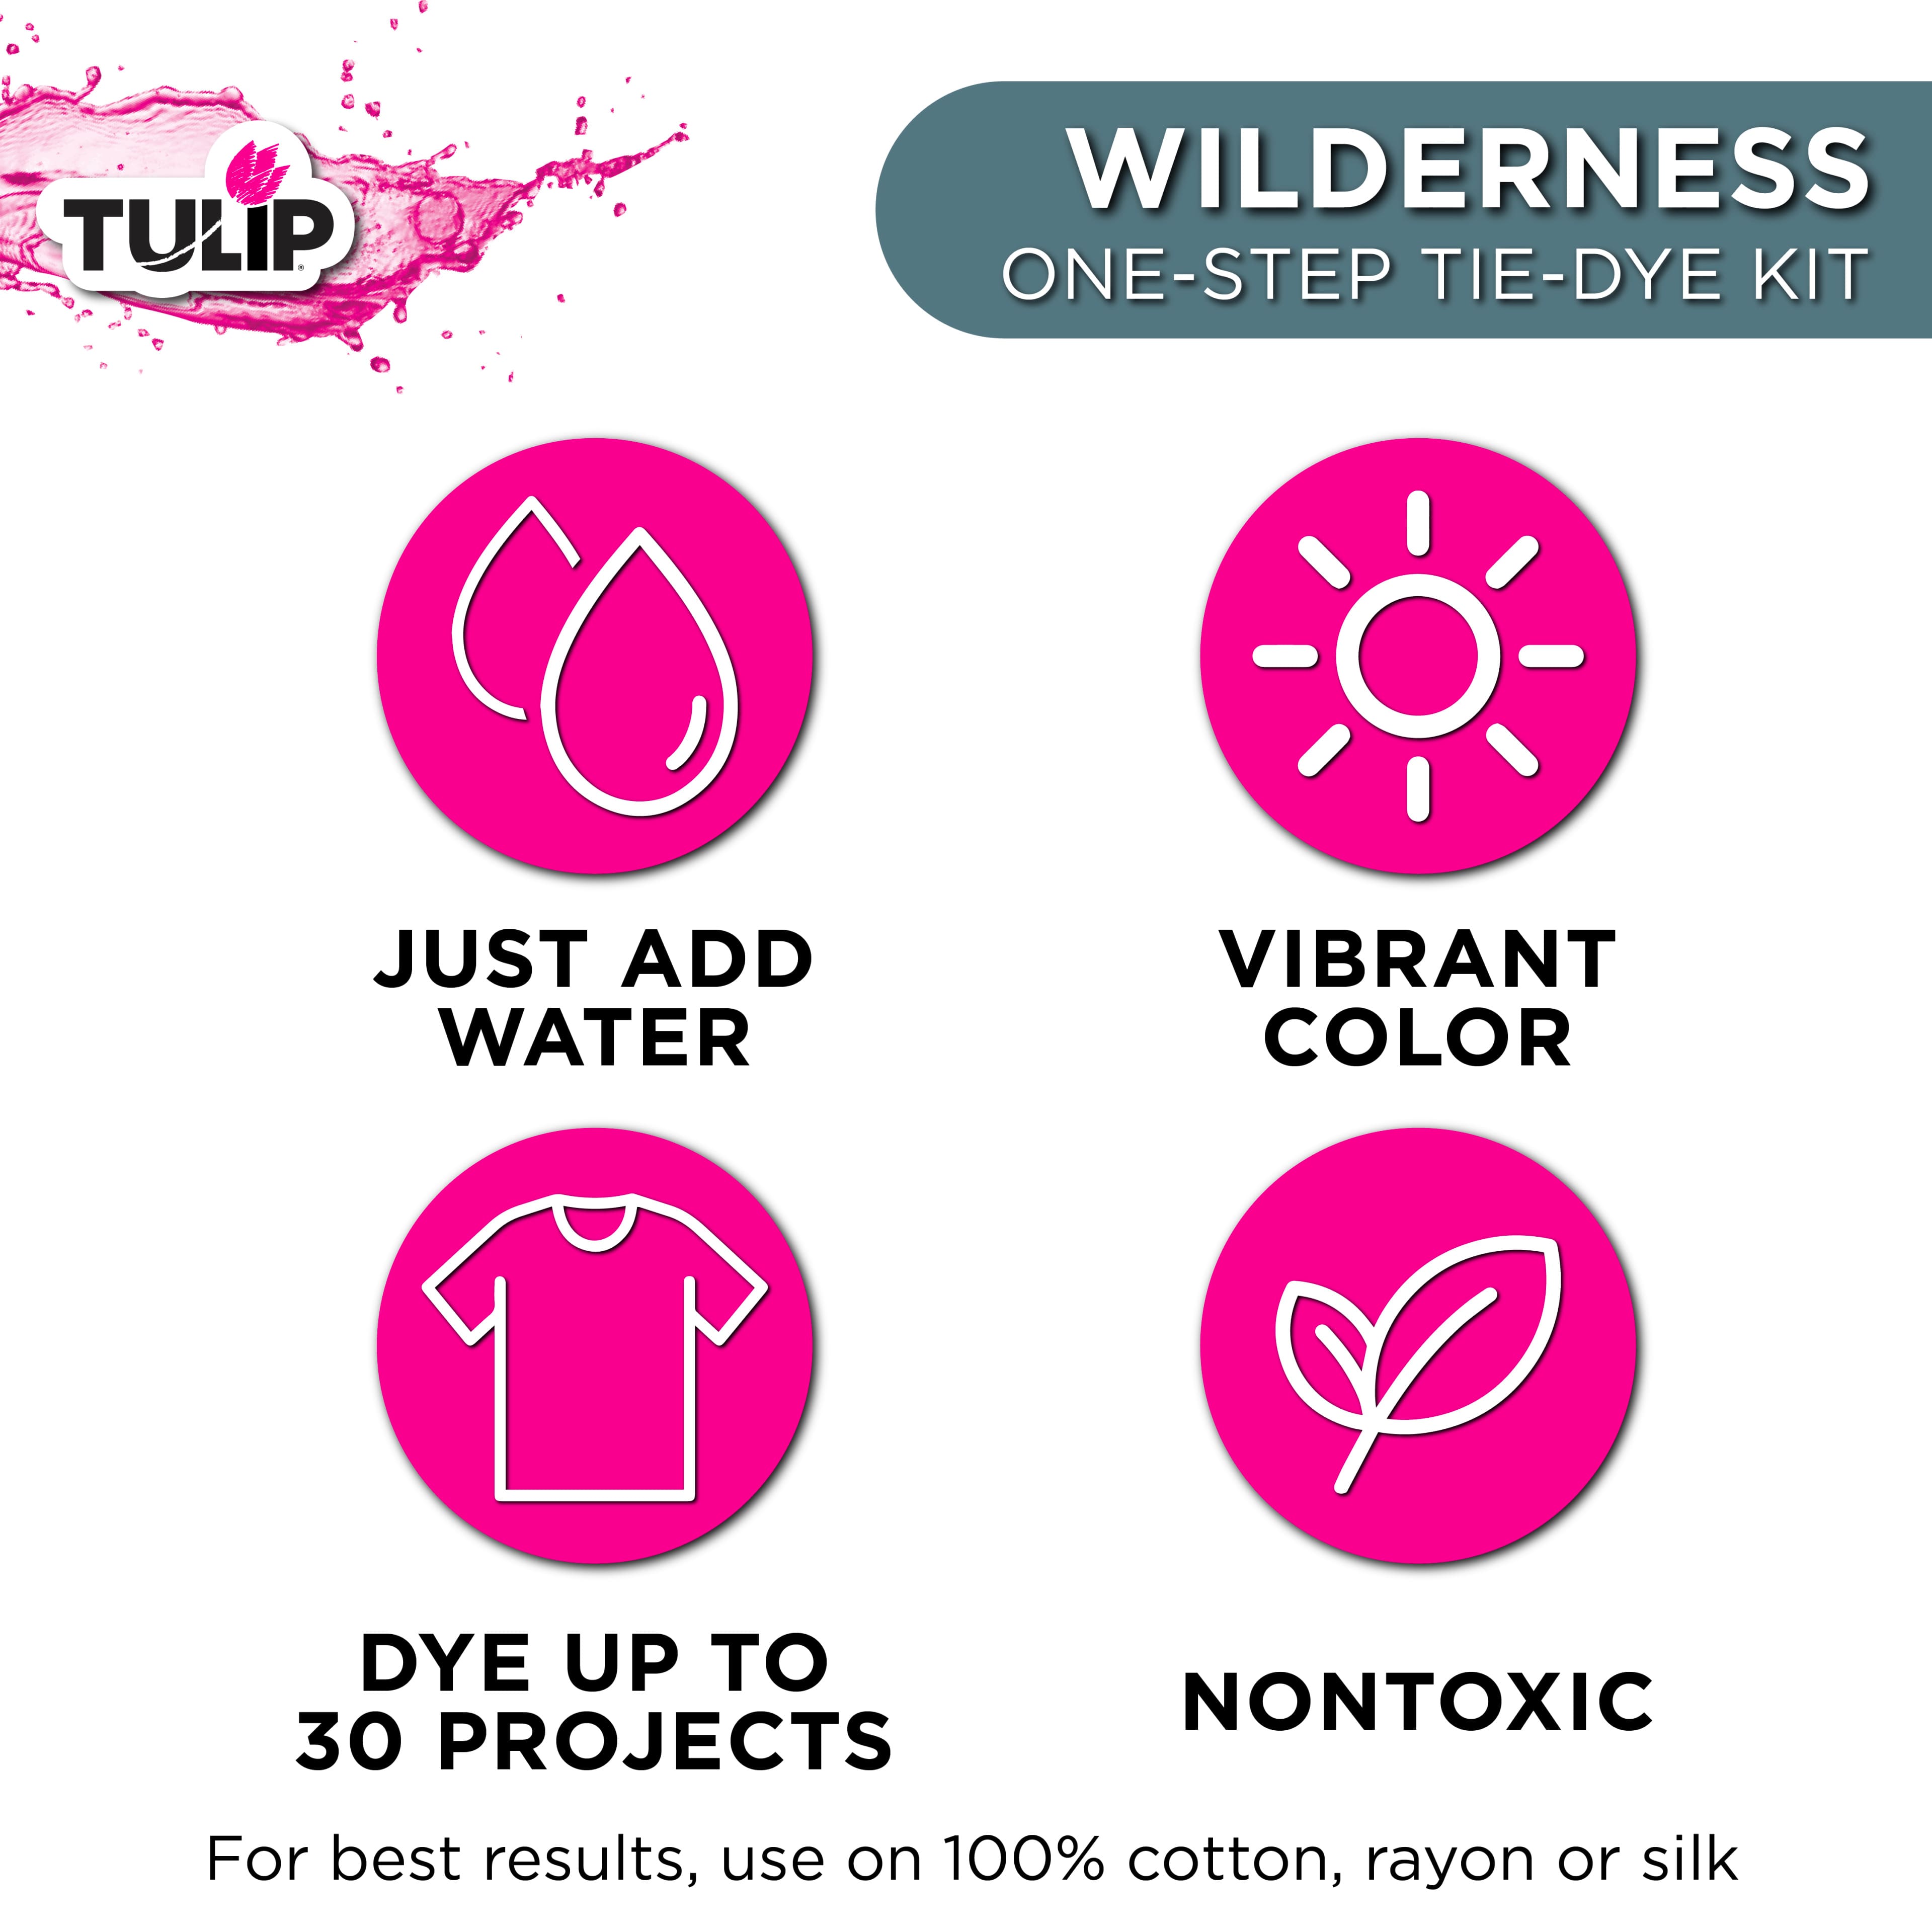 Tulip&#xAE; Wilderness One-Step Tie-Dye Kit&#xAE;